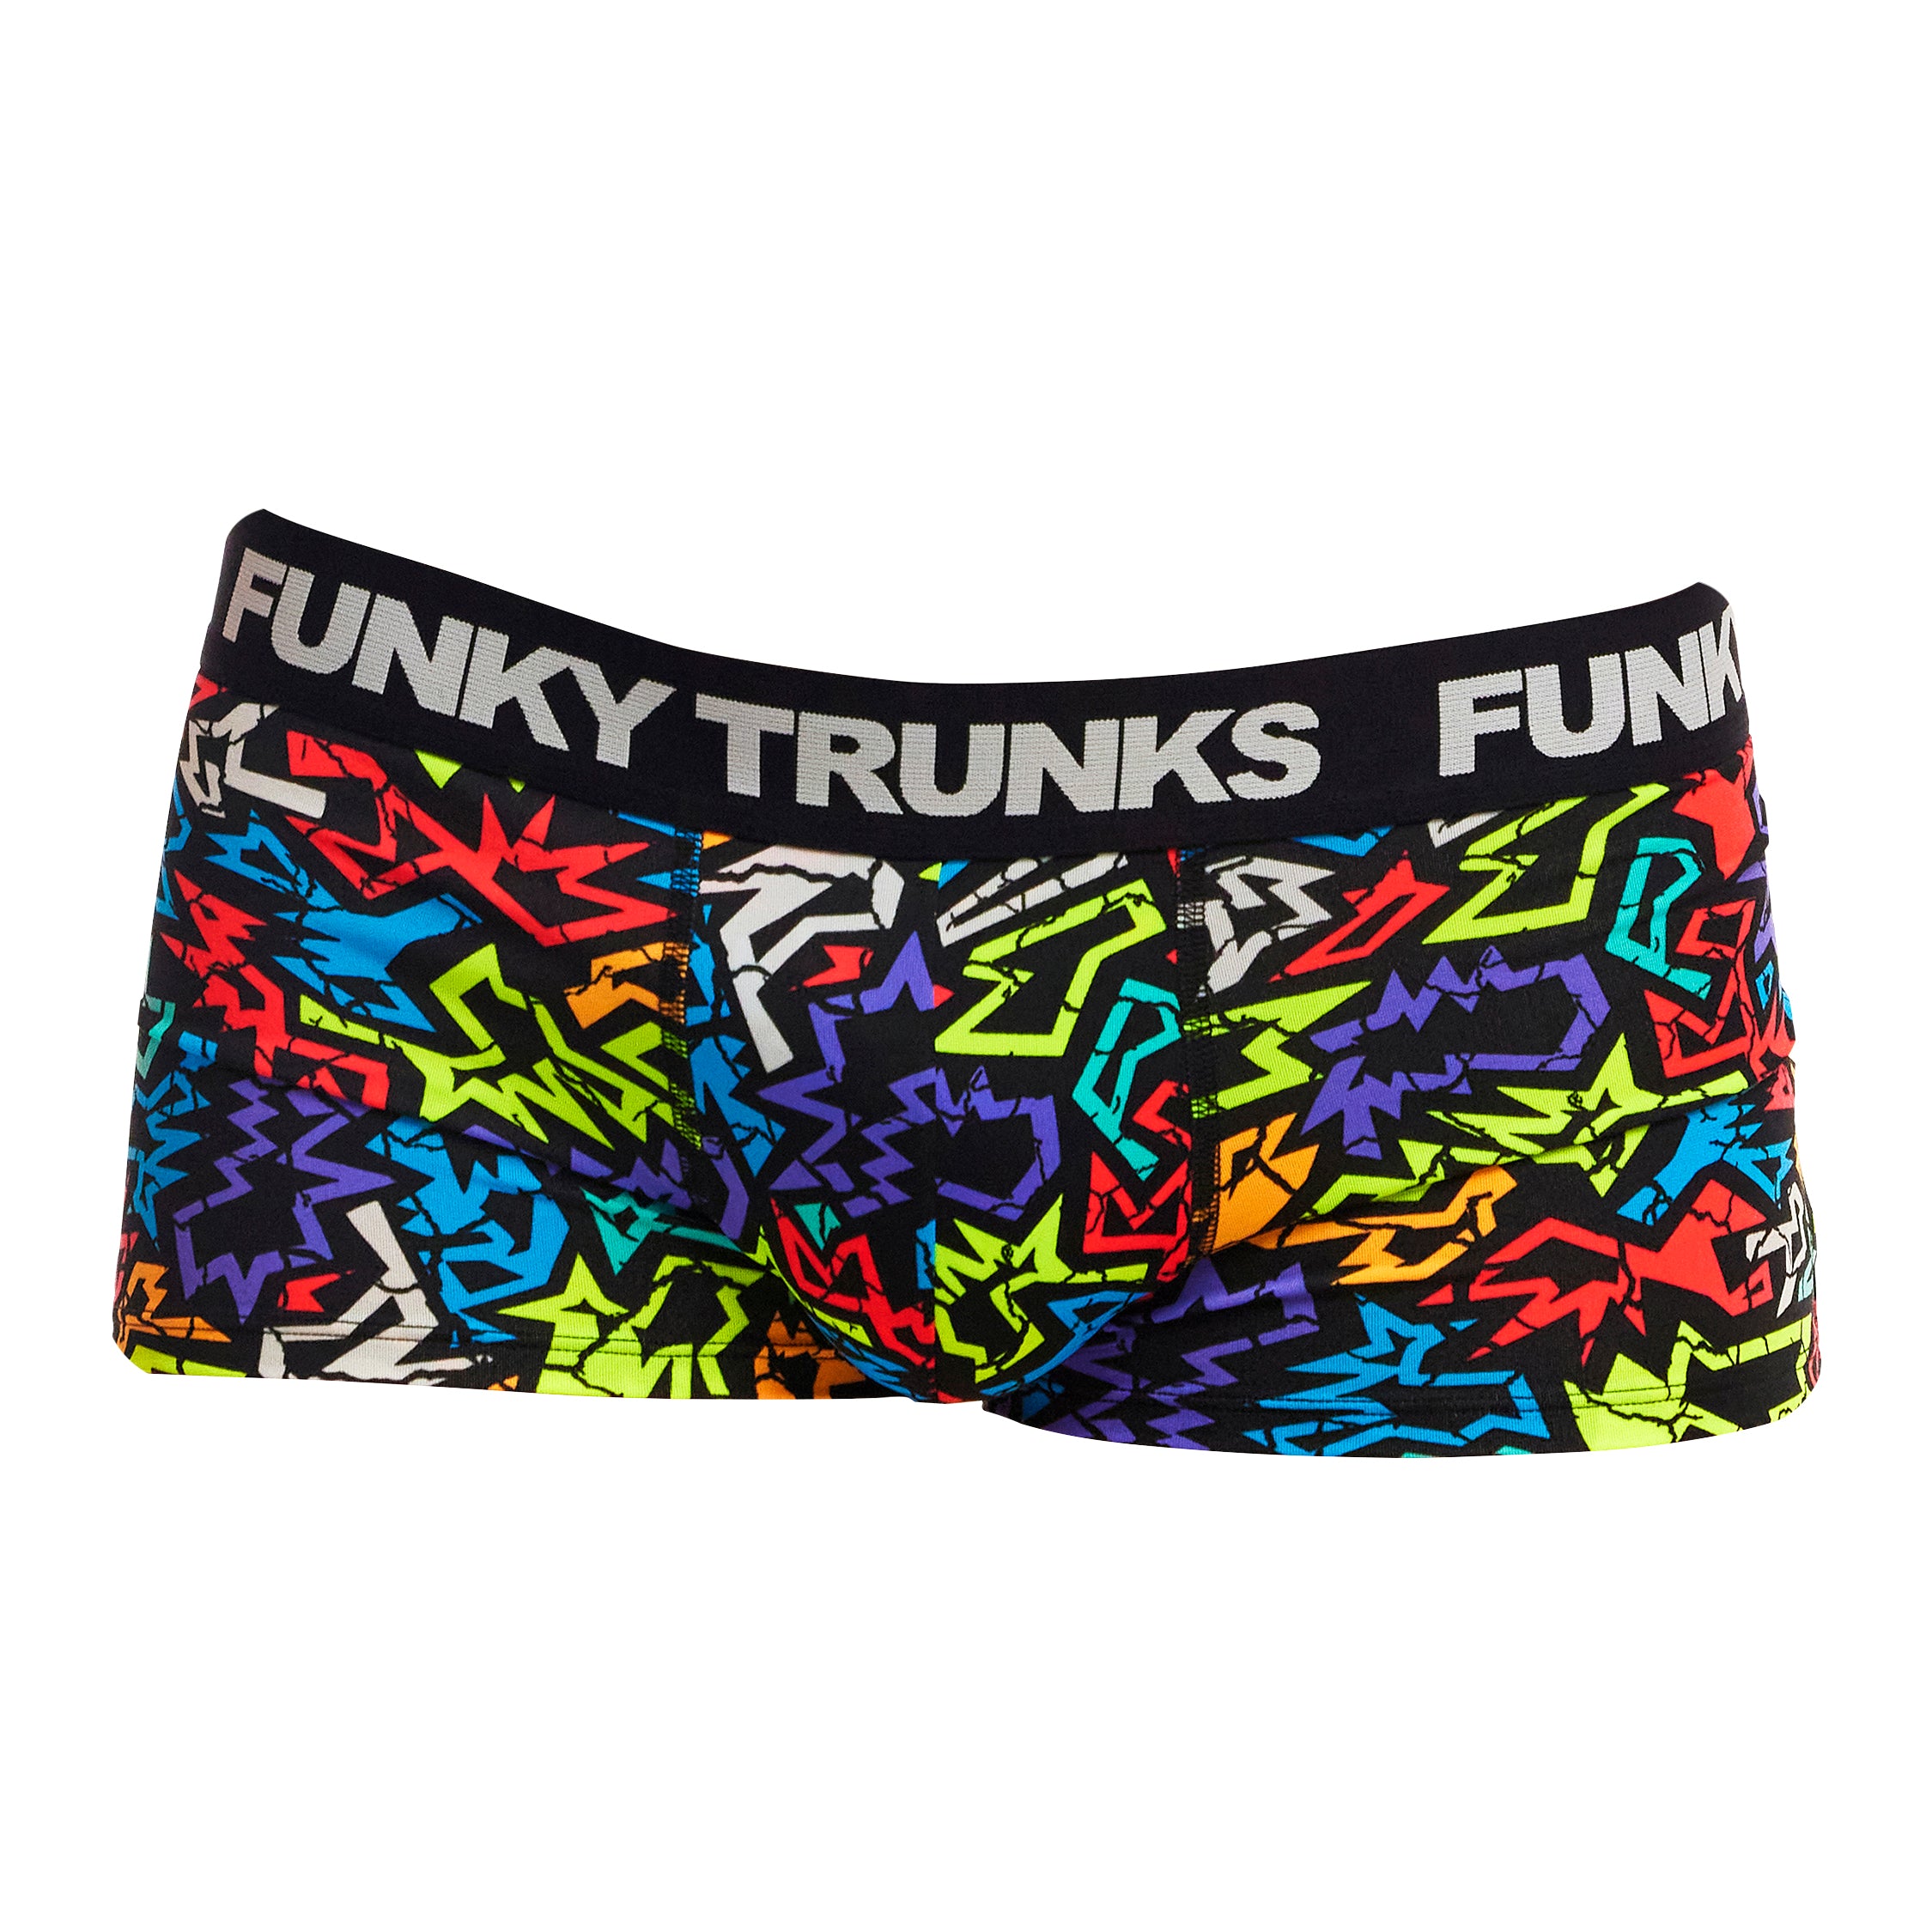 Funky Trunks - Funk Me - Mens Underwear Trunks